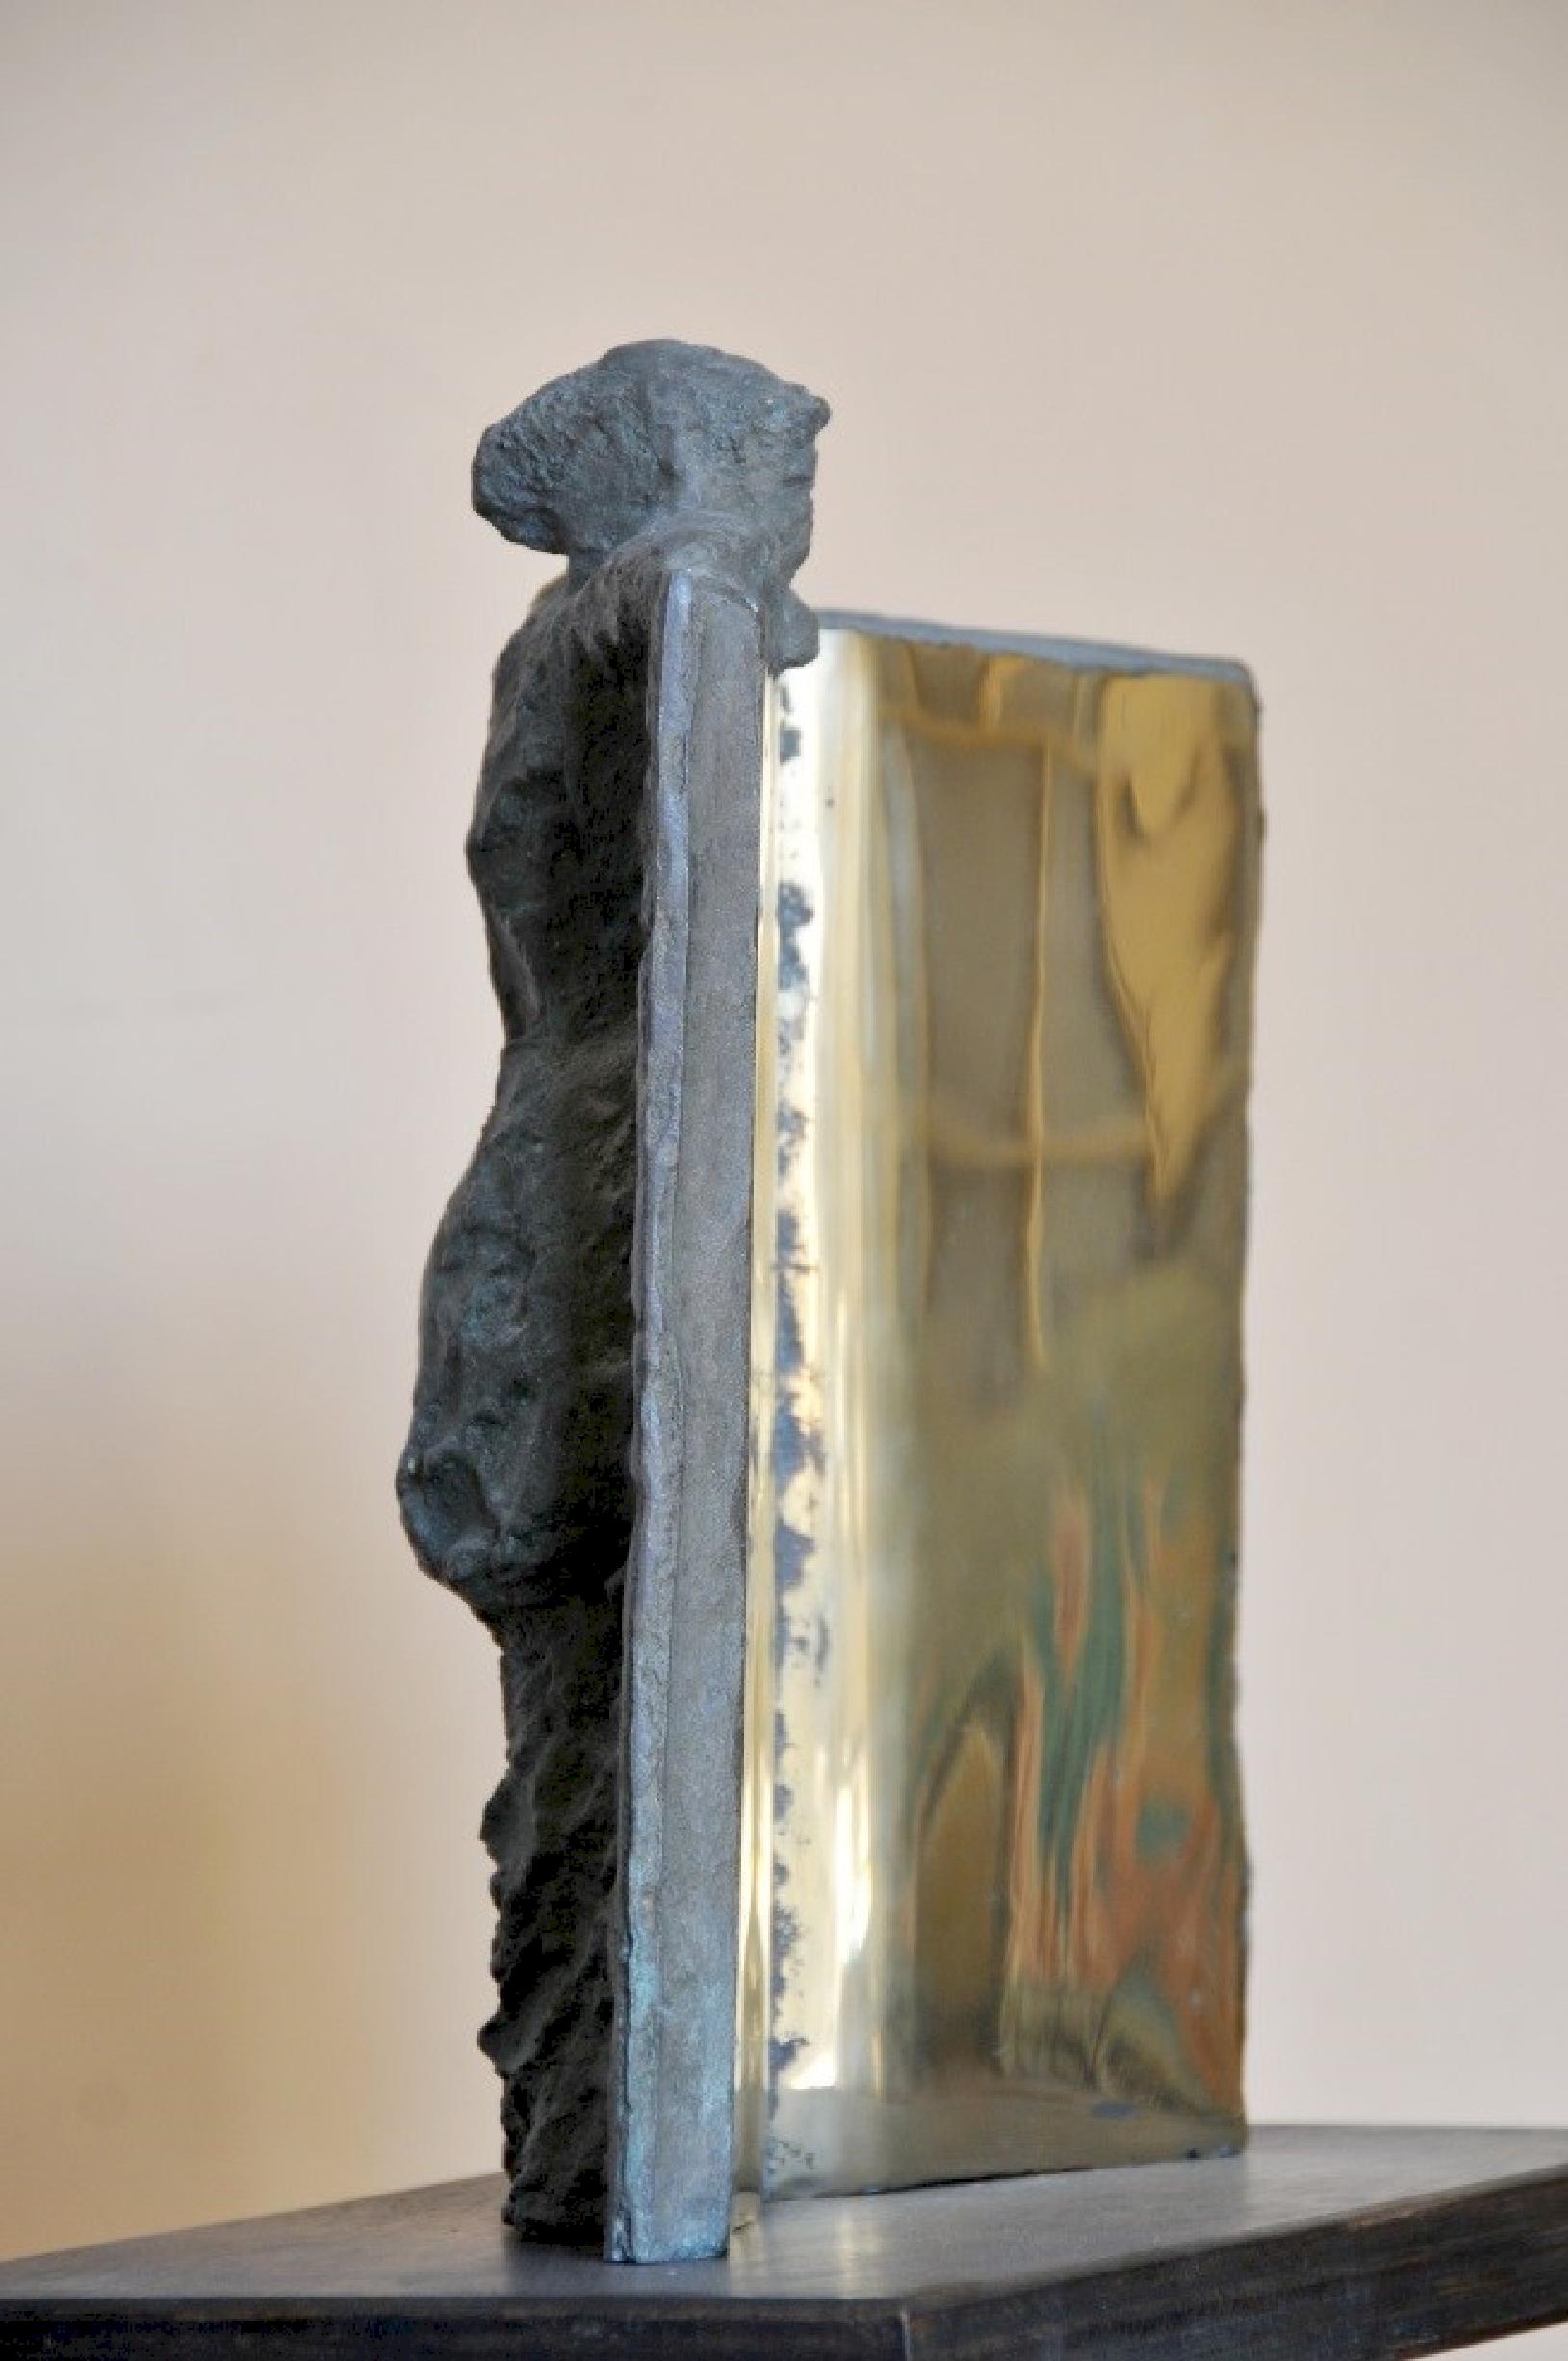 « Livre d'artiste » Sculpture en bronze 13" x 10.5" x 3,5" pouces par Sarkis Tossonian	

Sarkis Tossoonian est né à Alexandrie en 1953. Il est diplômé de la Faculté des Beaux-Arts/Sculpture en 1979. Il a commencé à exposer dans des expositions